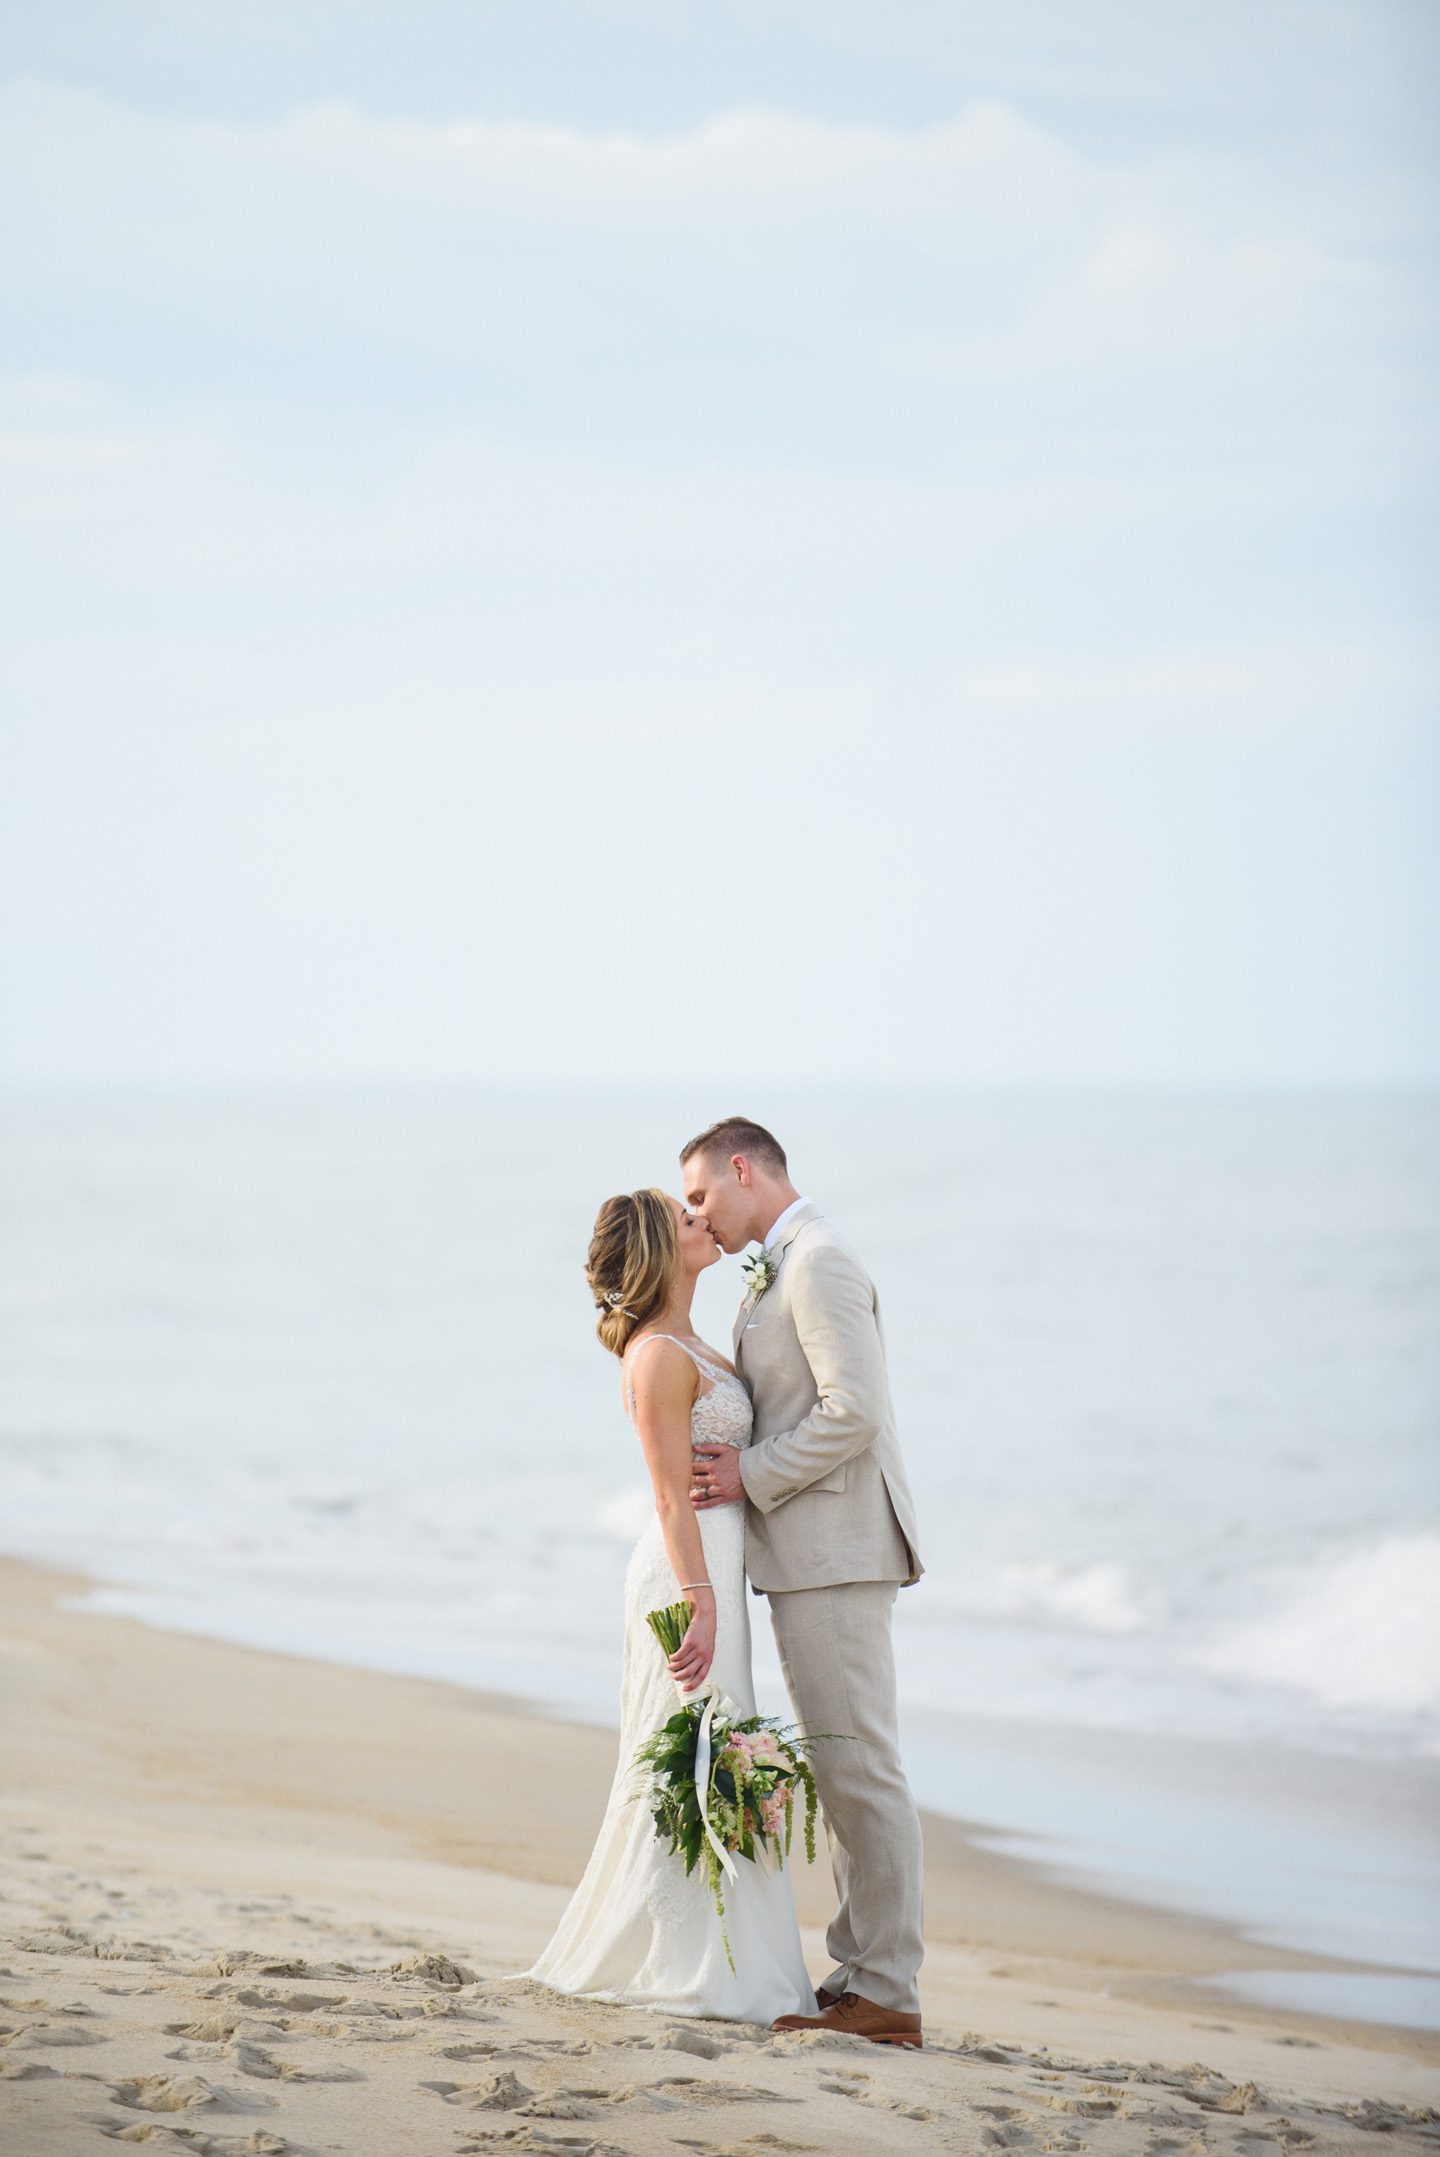 Outer Banks Wedding Photographers Neil GT Photography Palmers Island Beach Elopement Walking Beach Kiss